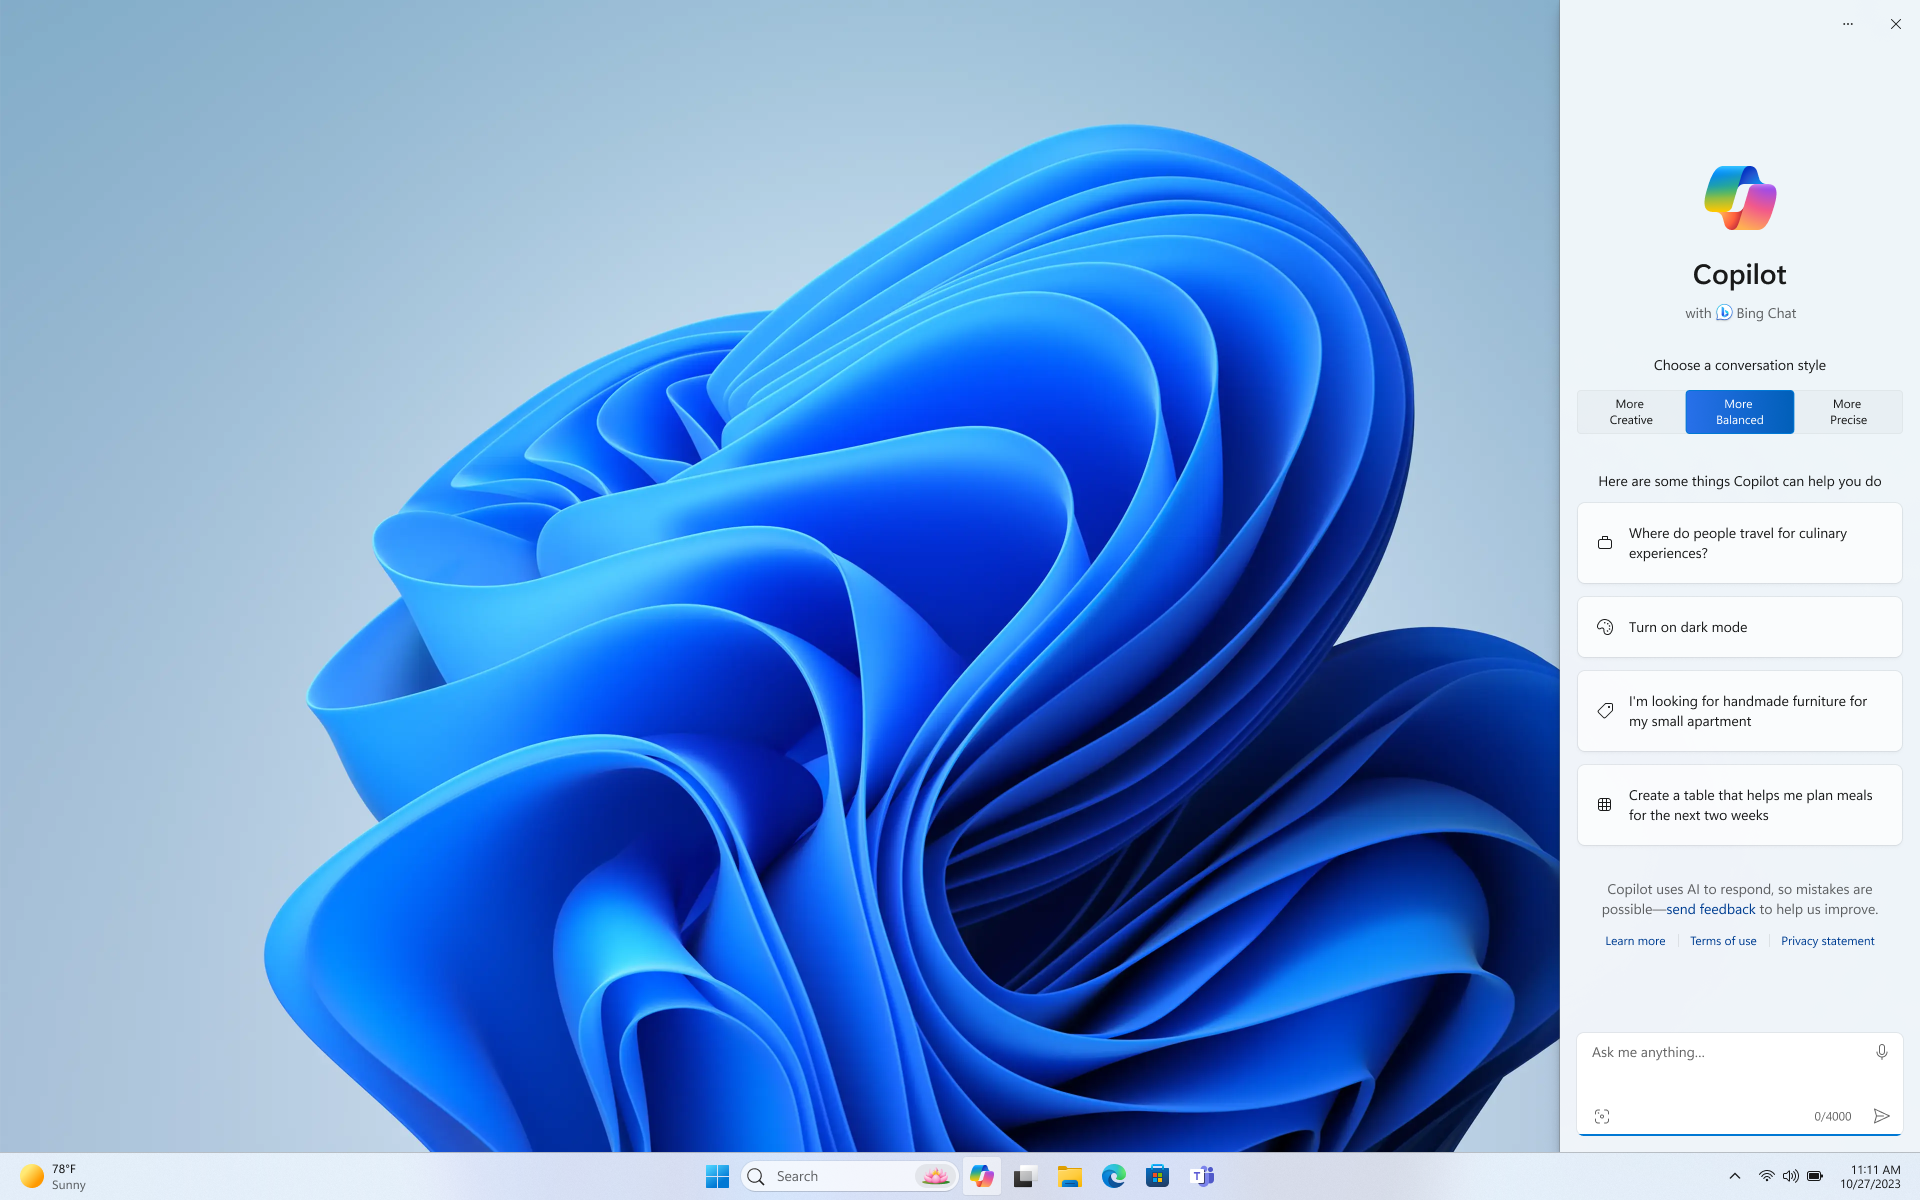 Kuvatõmmis heleda kujundusega Windowsi töölauast, kus on kuvatud sama kujundust järgiv Windowsi rakendus Copilot.